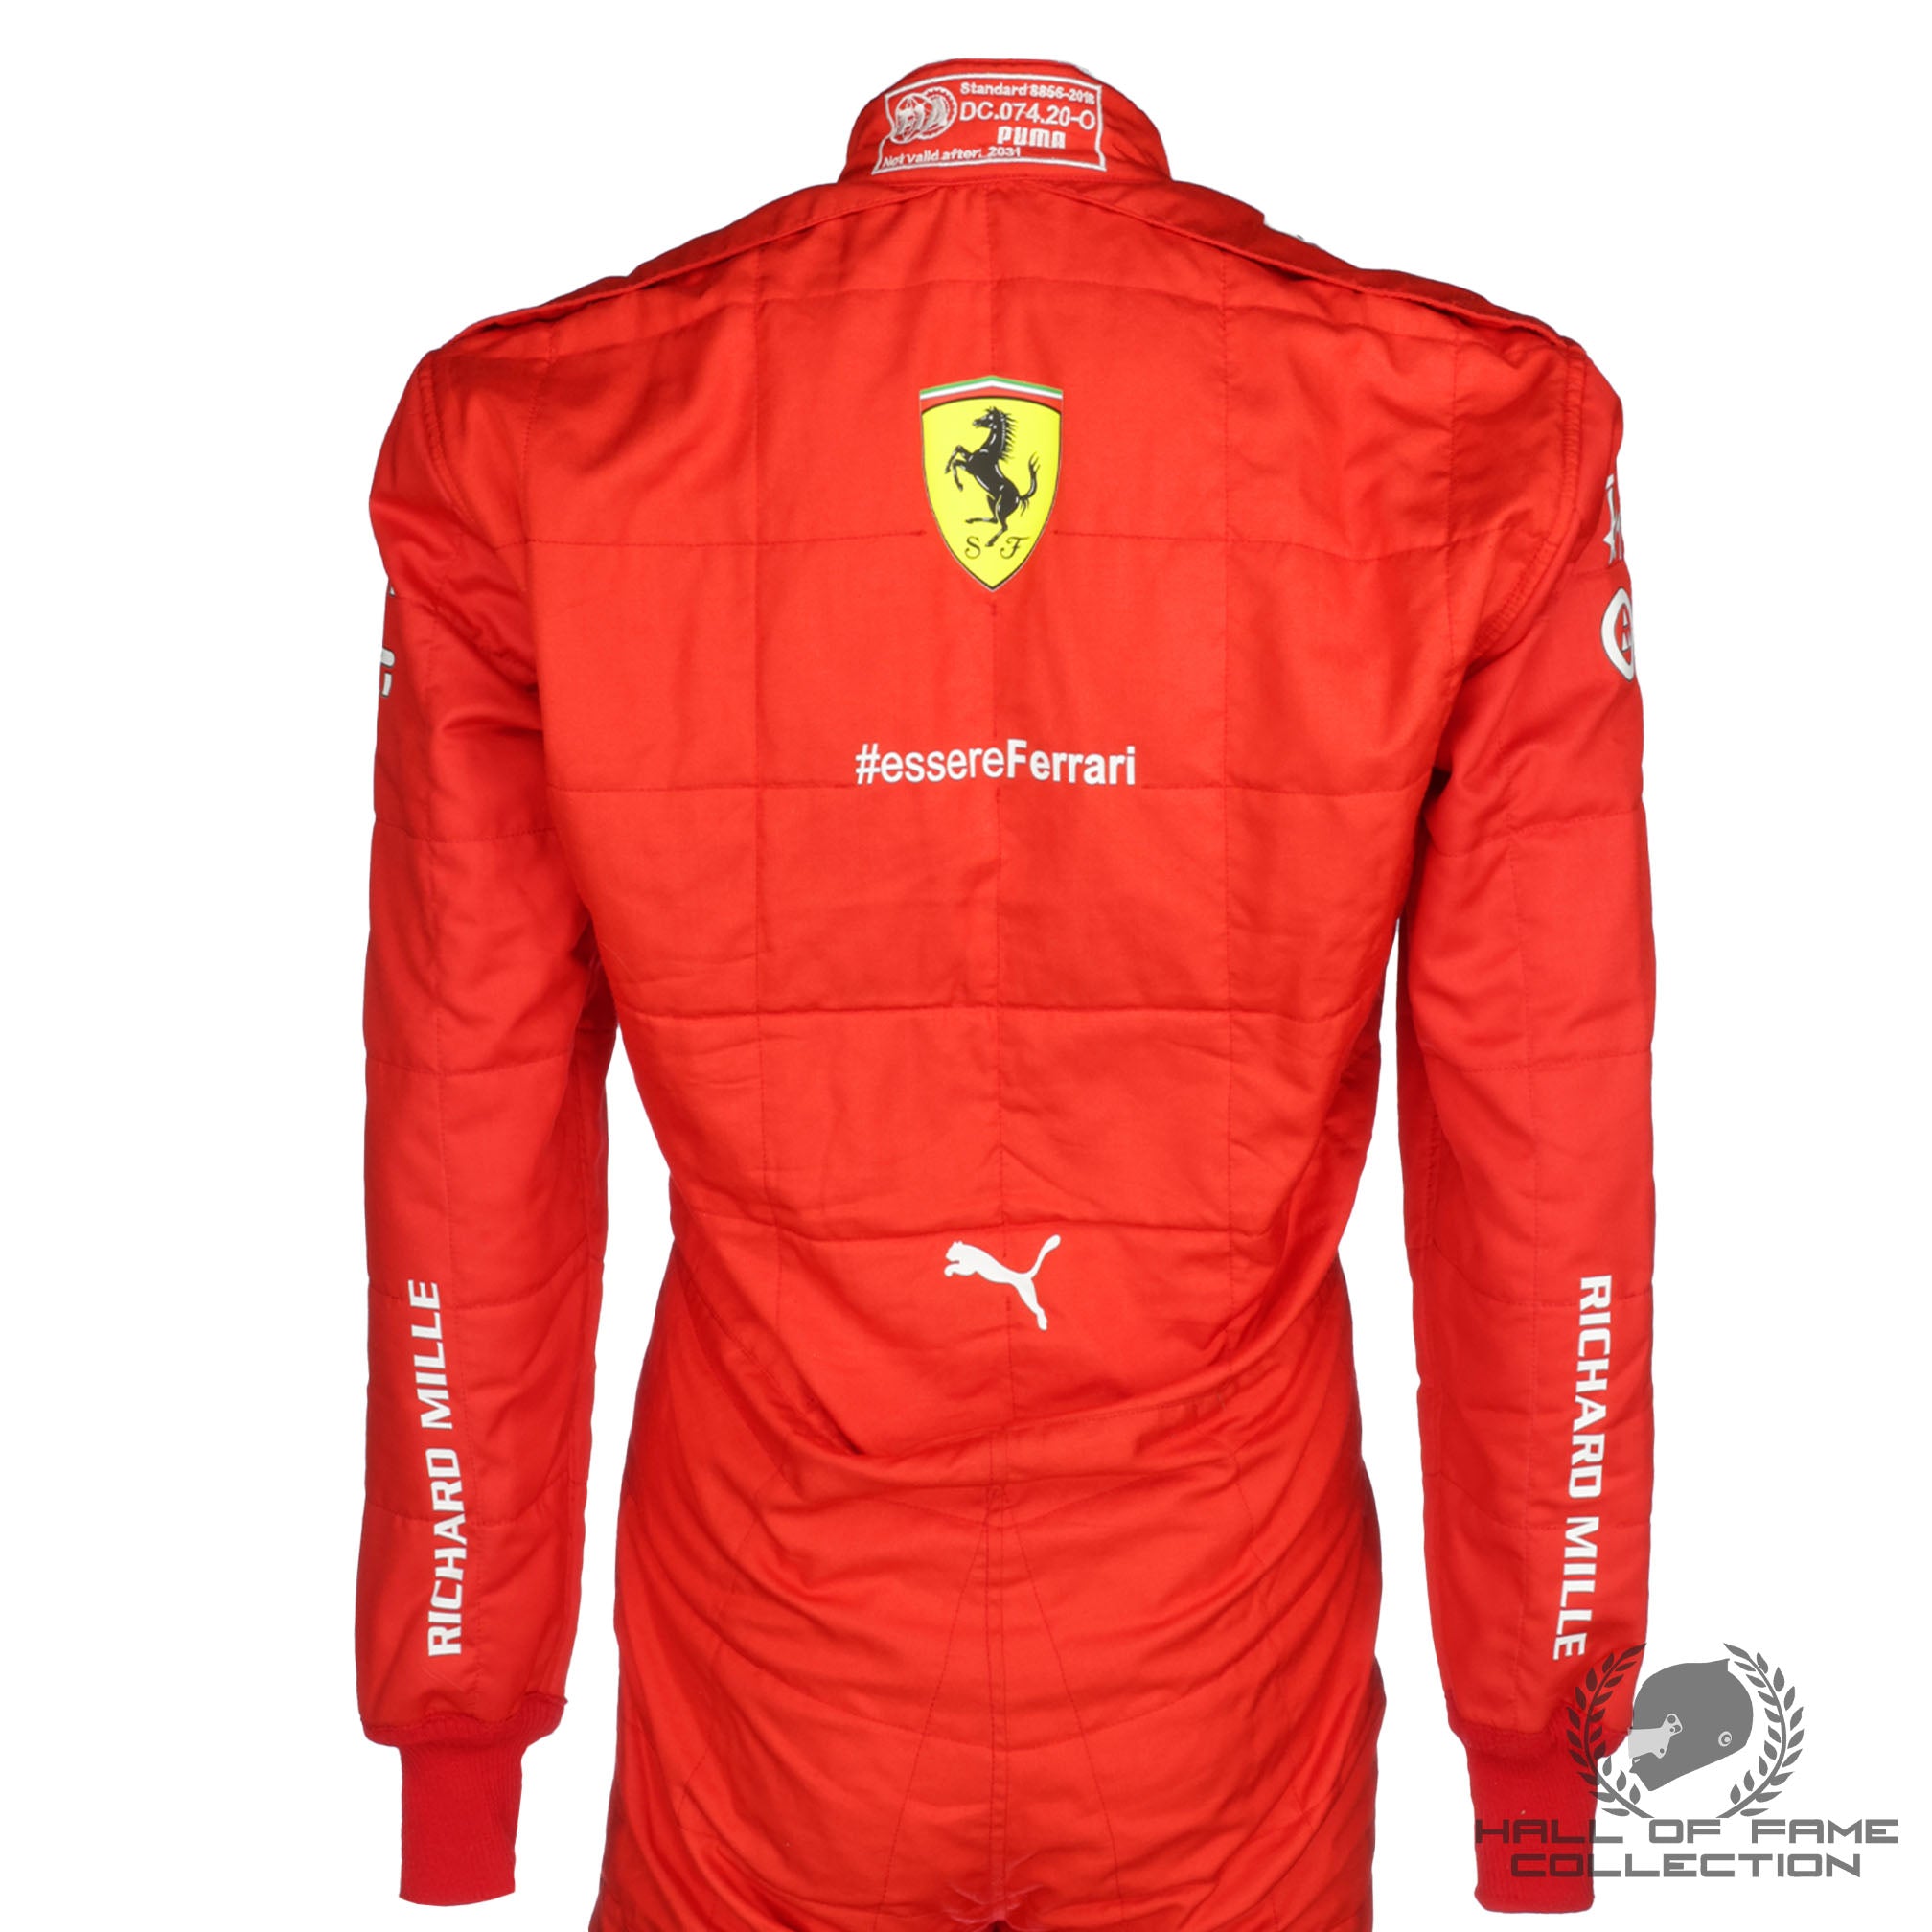 2021 Carlos Sainz Race Used Scuderia Ferrari F1 Suit